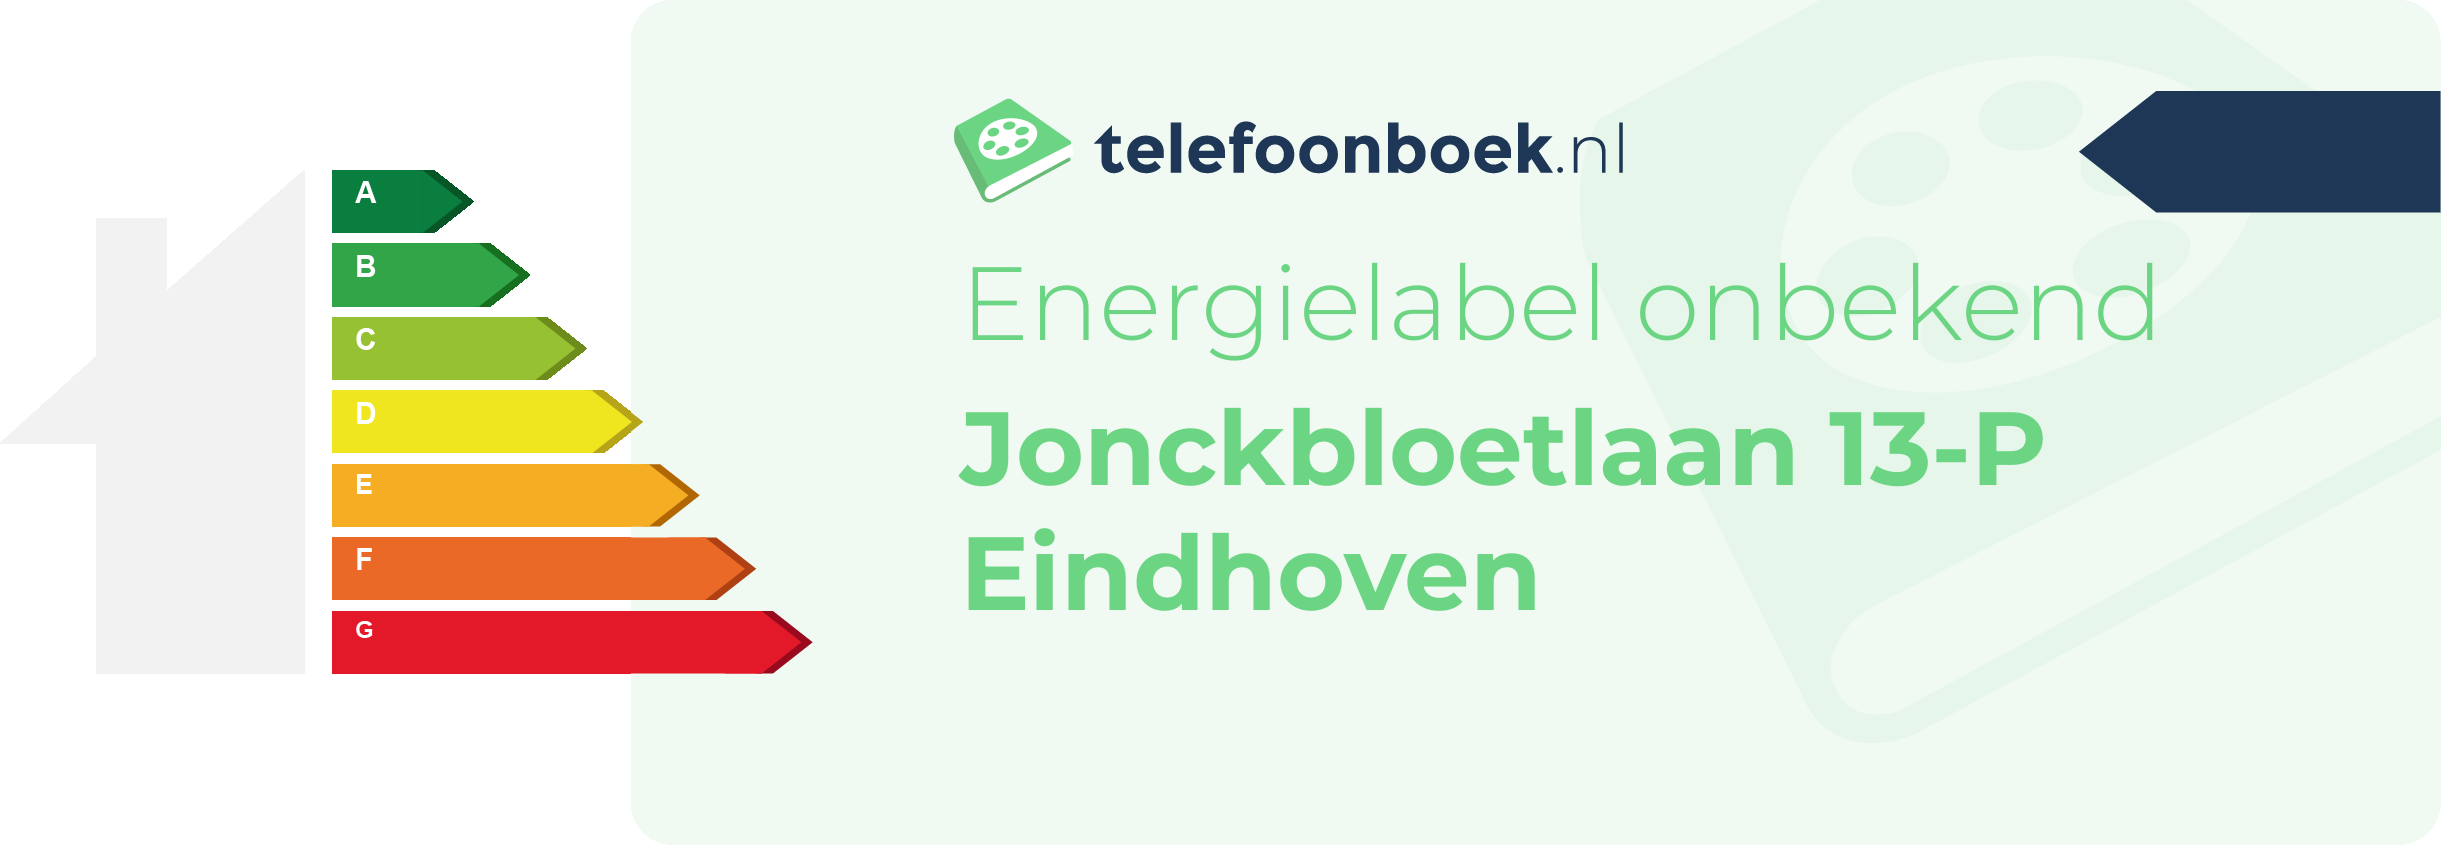 Energielabel Jonckbloetlaan 13-P Eindhoven